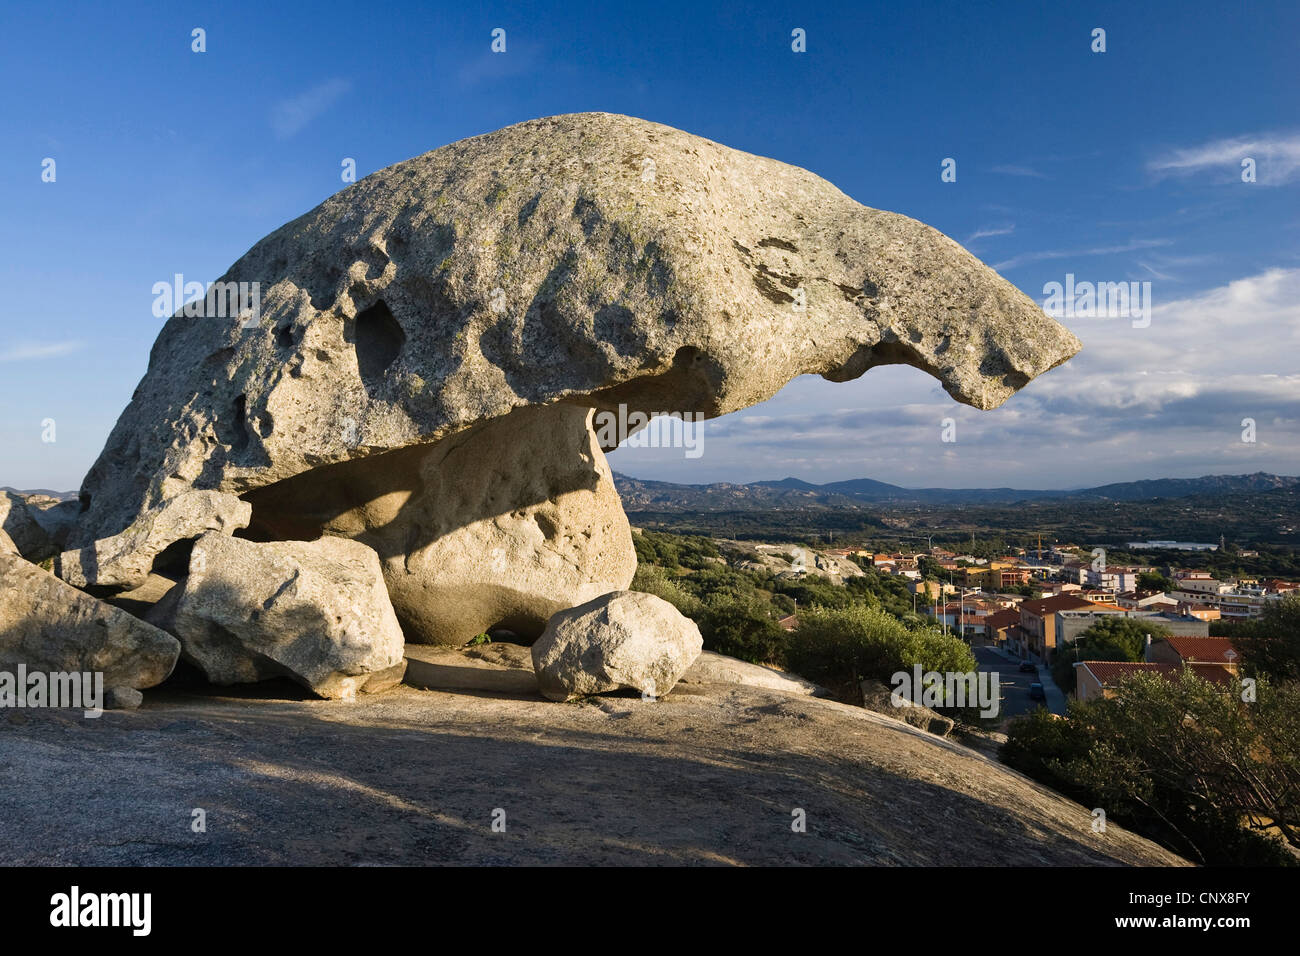 mushroom-shaped rock in Arzachena, Italy, Sardegna Stock Photo